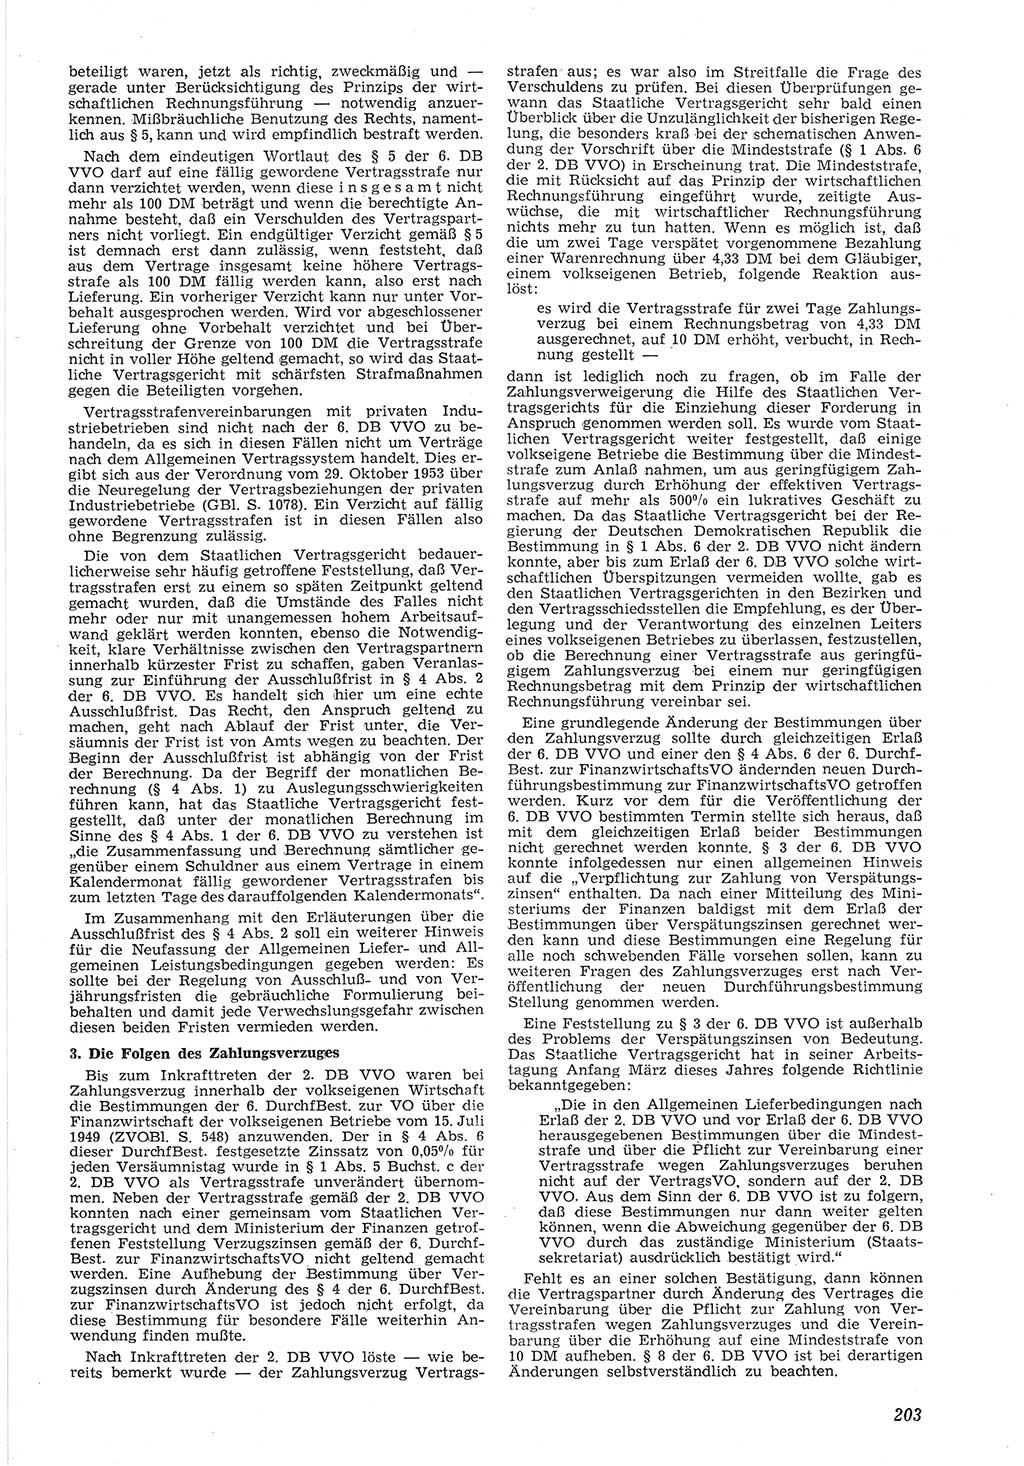 Neue Justiz (NJ), Zeitschrift für Recht und Rechtswissenschaft [Deutsche Demokratische Republik (DDR)], 8. Jahrgang 1954, Seite 203 (NJ DDR 1954, S. 203)